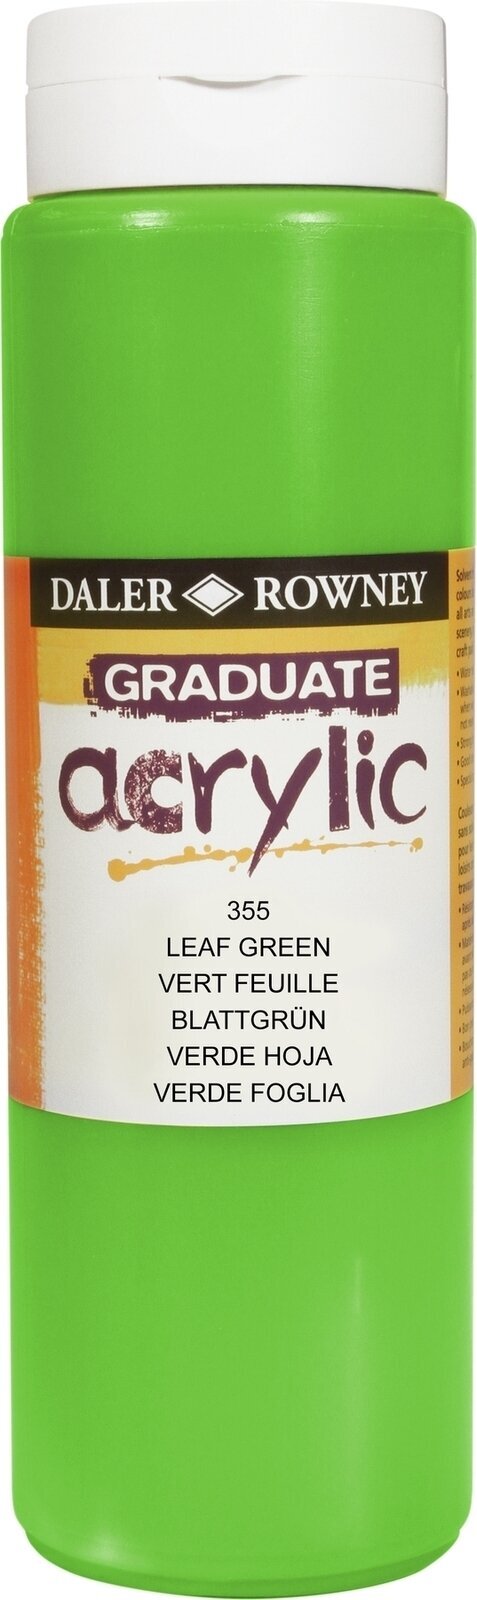 Akrilna boja Daler Rowney Graduate Akrilna boja Leaf Green 500 ml 1 kom